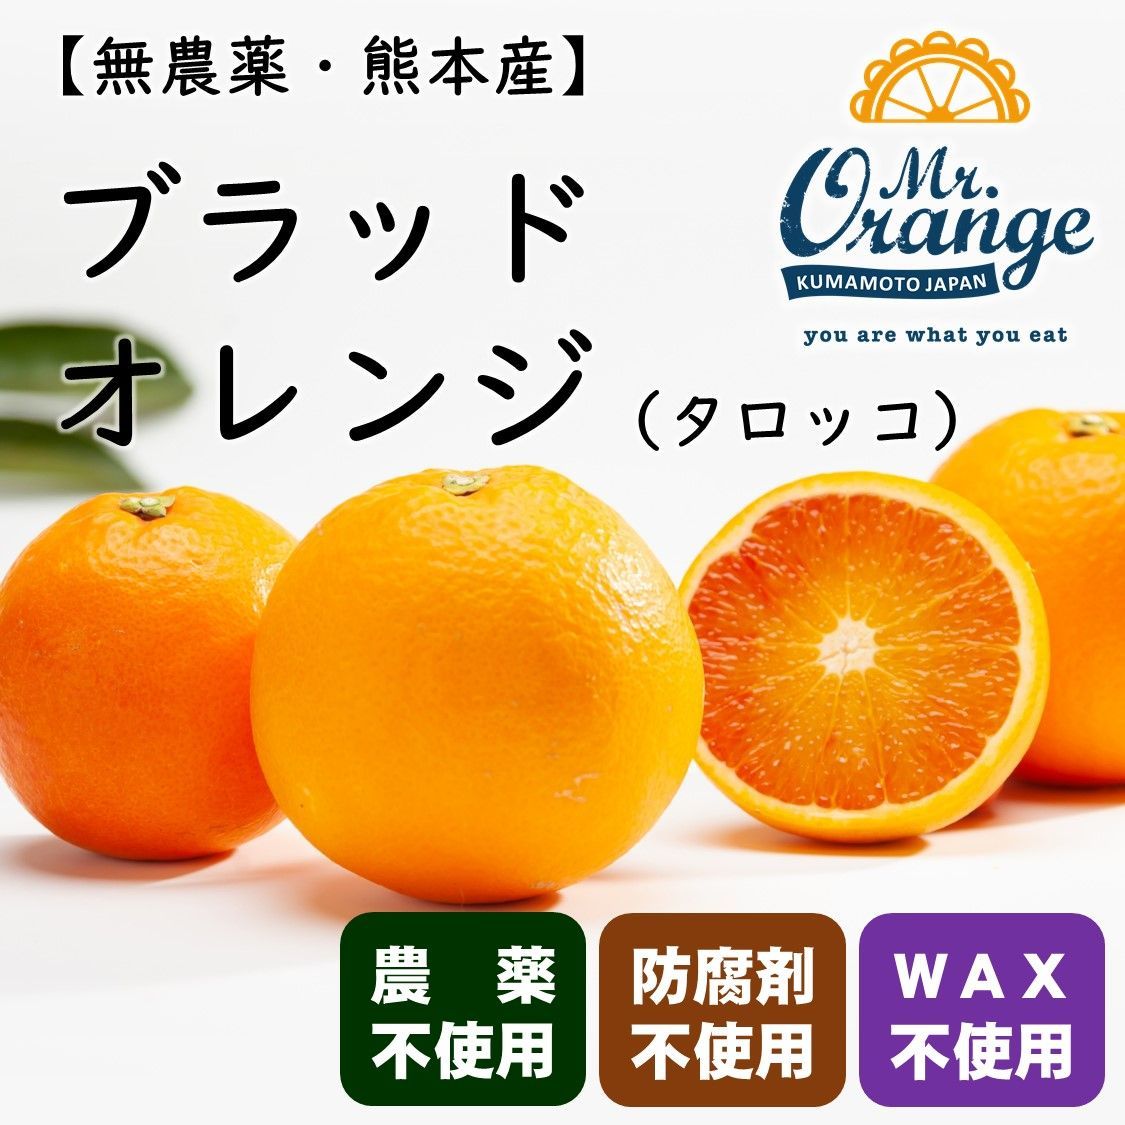 スピード対応 全国送料無料 国産 バレンシアオレンジ 3kg